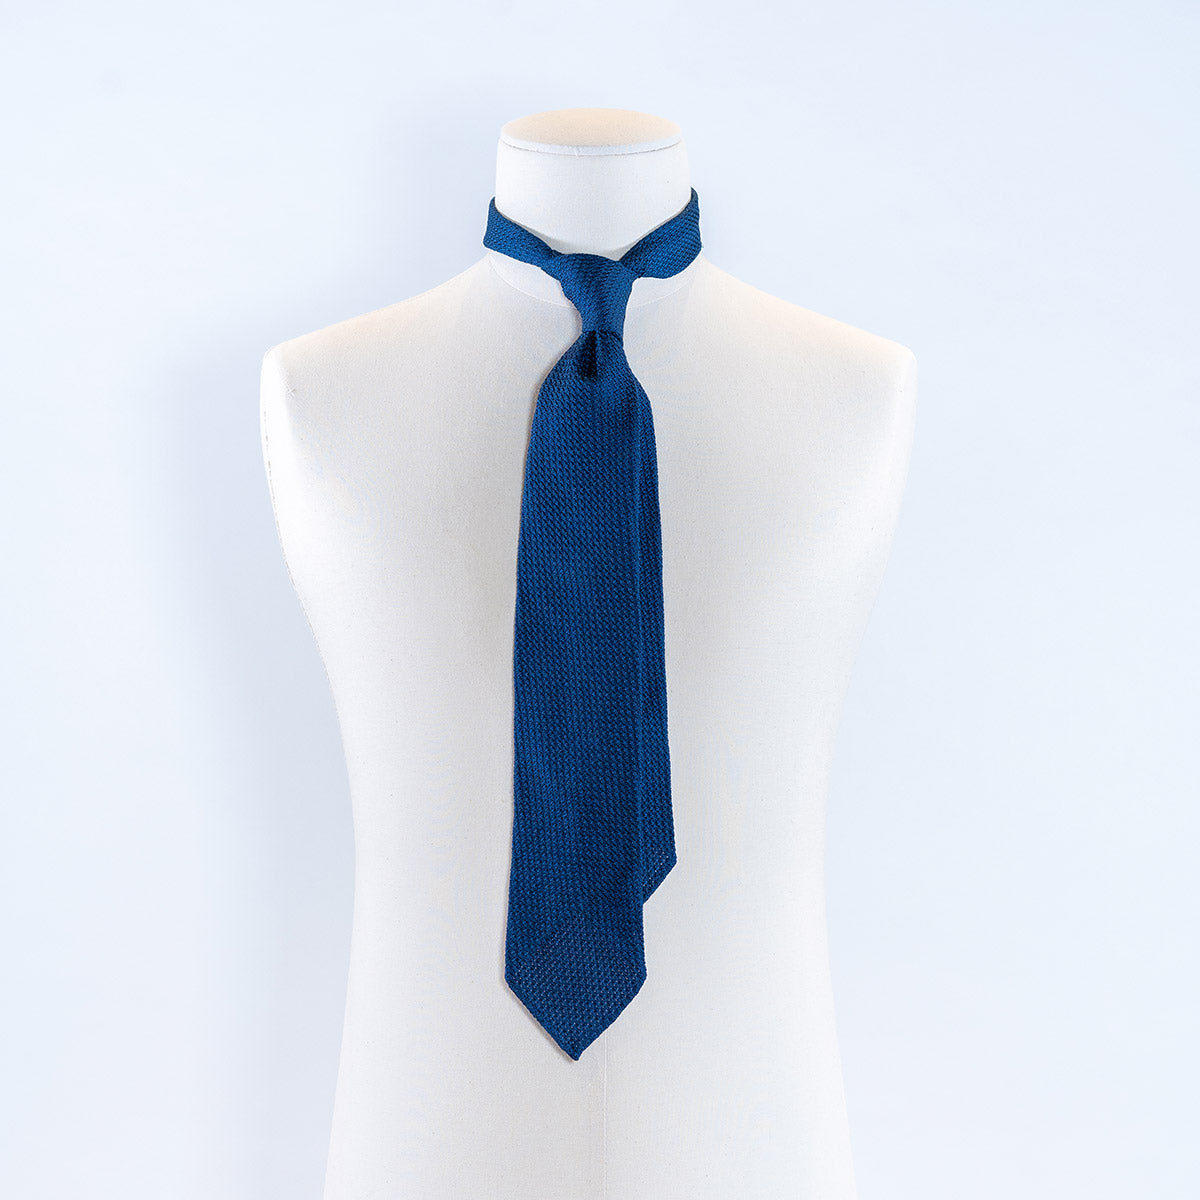 3-Fold Garza Grossa silk tie - french navy